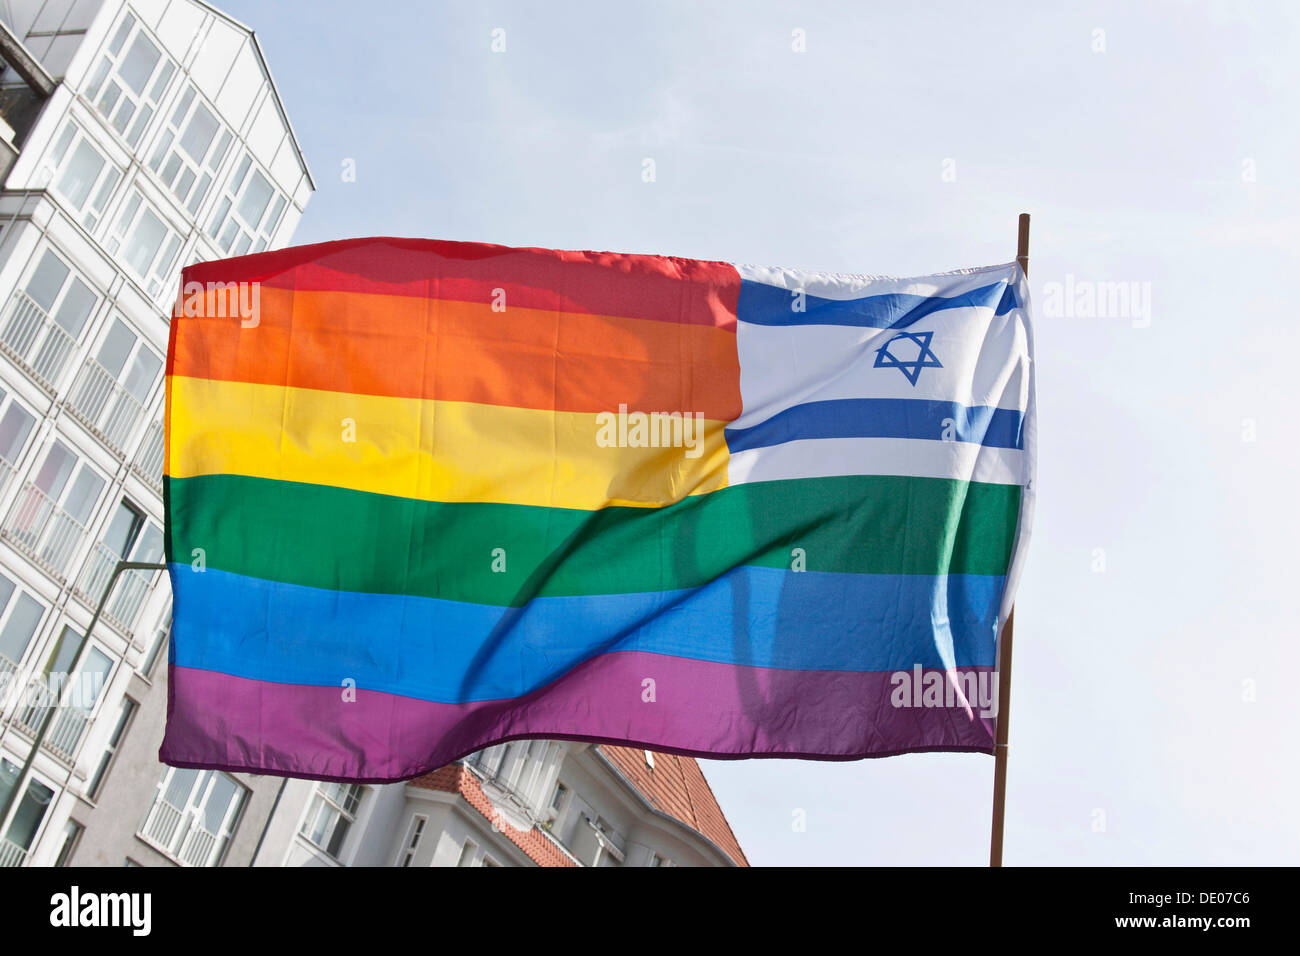 Drapeau arc-en-ciel avec le drapeau national d'Israël dans le coin en haut à droite, étoile de David, rassemblement contre la Journée Al Qods, de protestation Banque D'Images